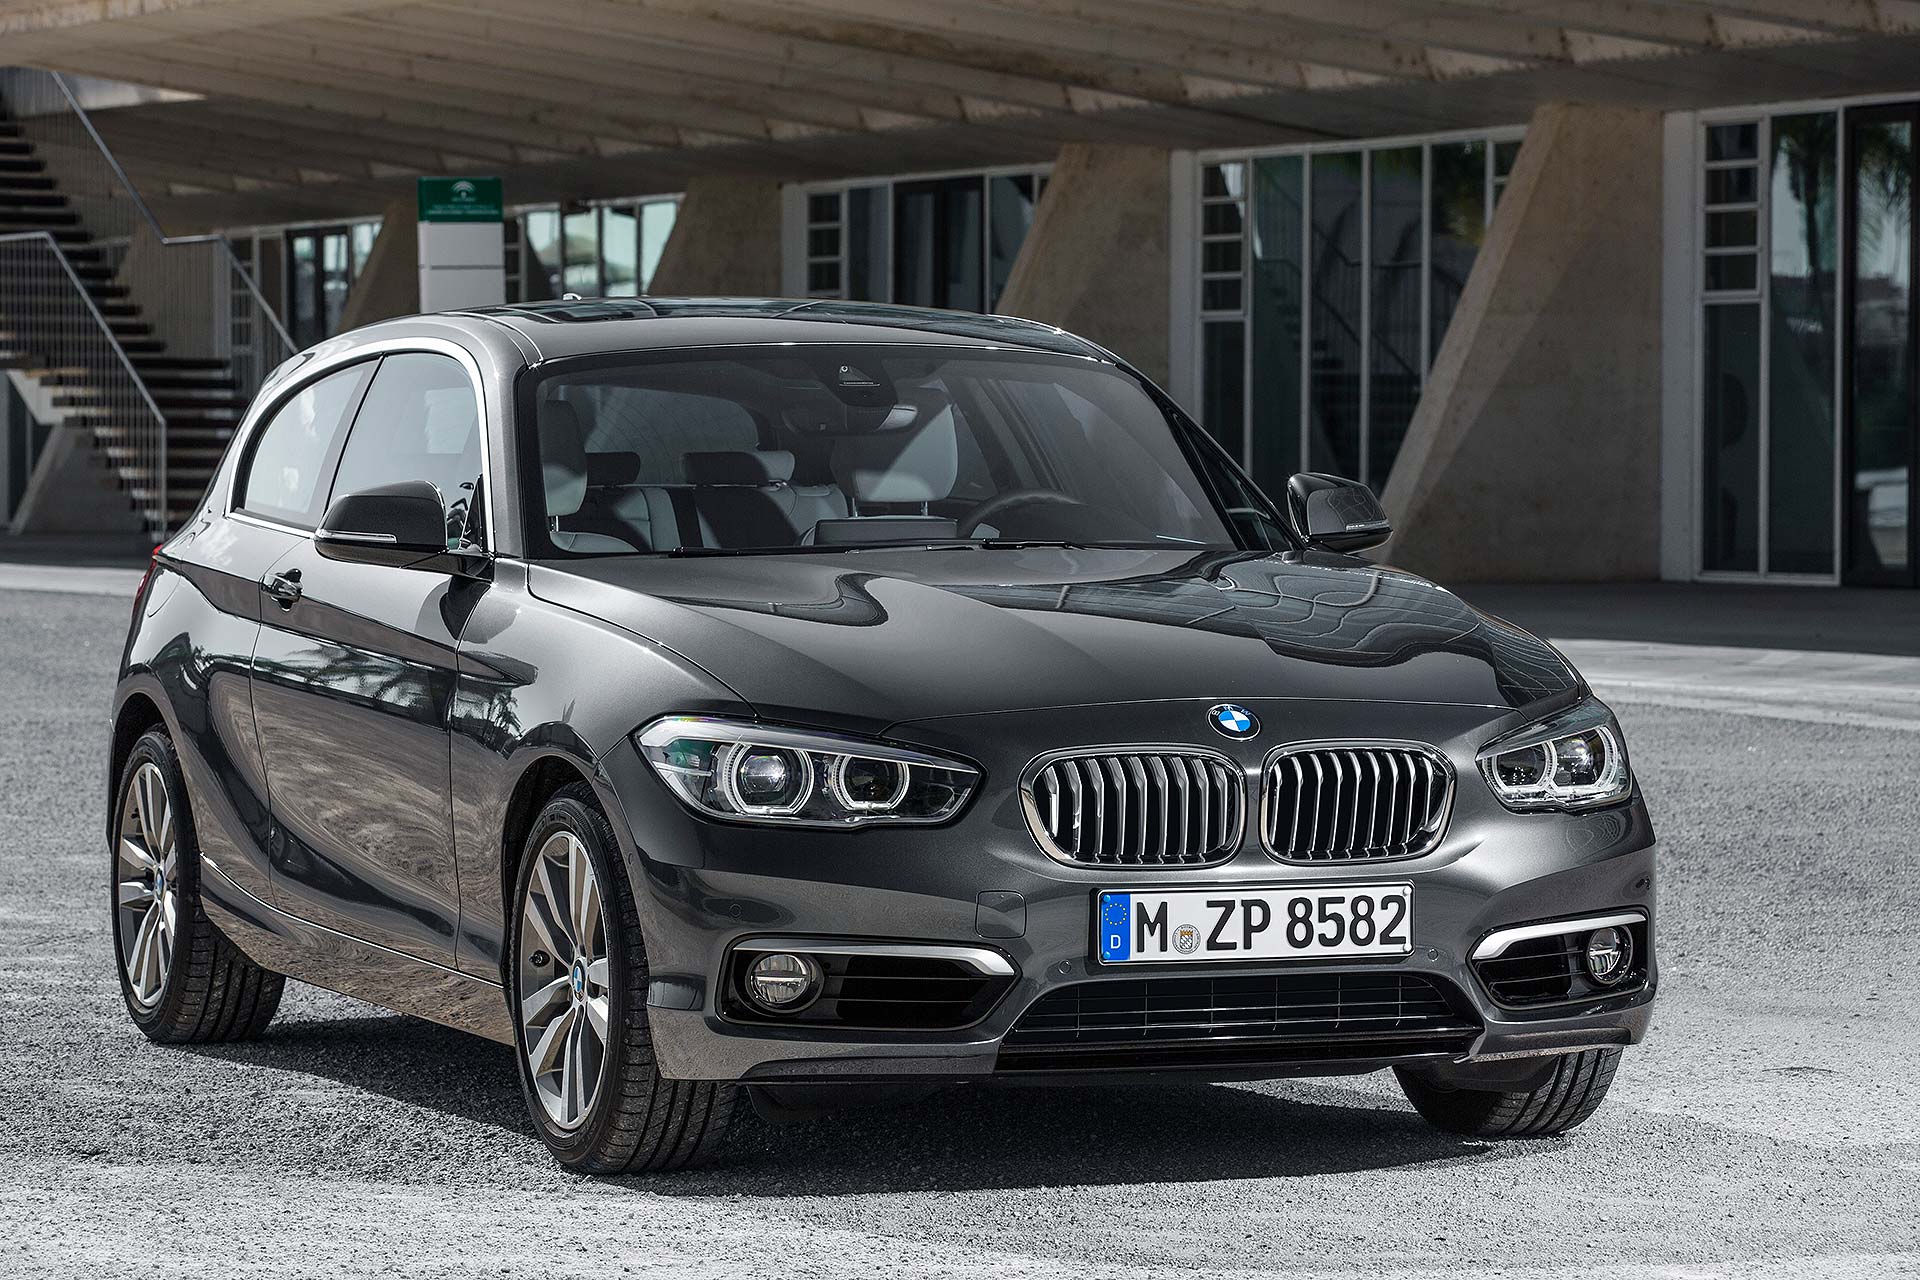 BMW 1er Facelift 2015: F20 / F21 LCI gründlich überarbeitet